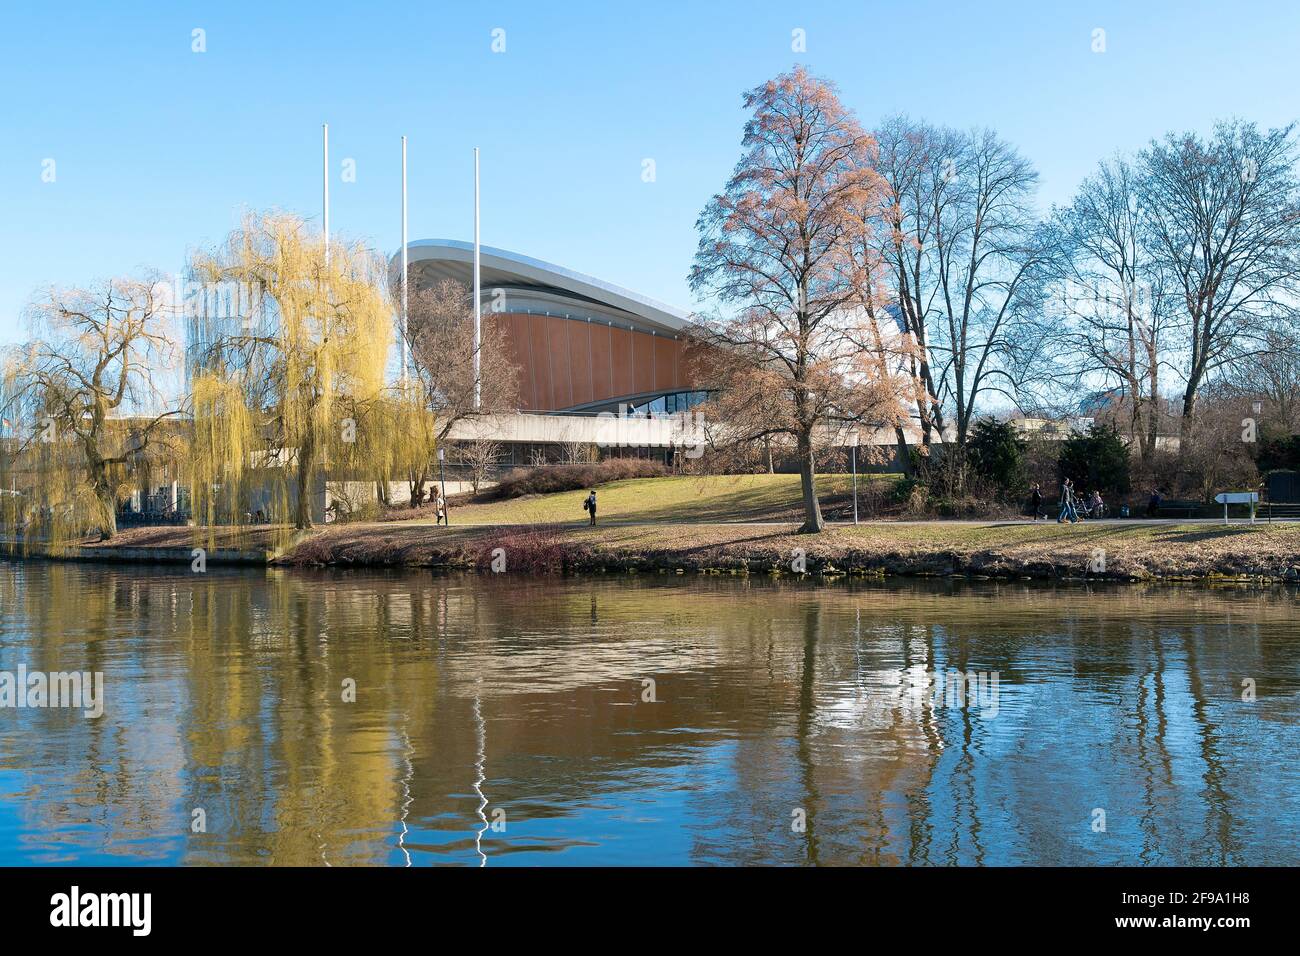 Berlin, Tiergarten, Magnus-Hirschfeld-Ufer, promenade au bord de la rivière, vue sur la Spree à la Maison des cultures du monde, printemps Banque D'Images